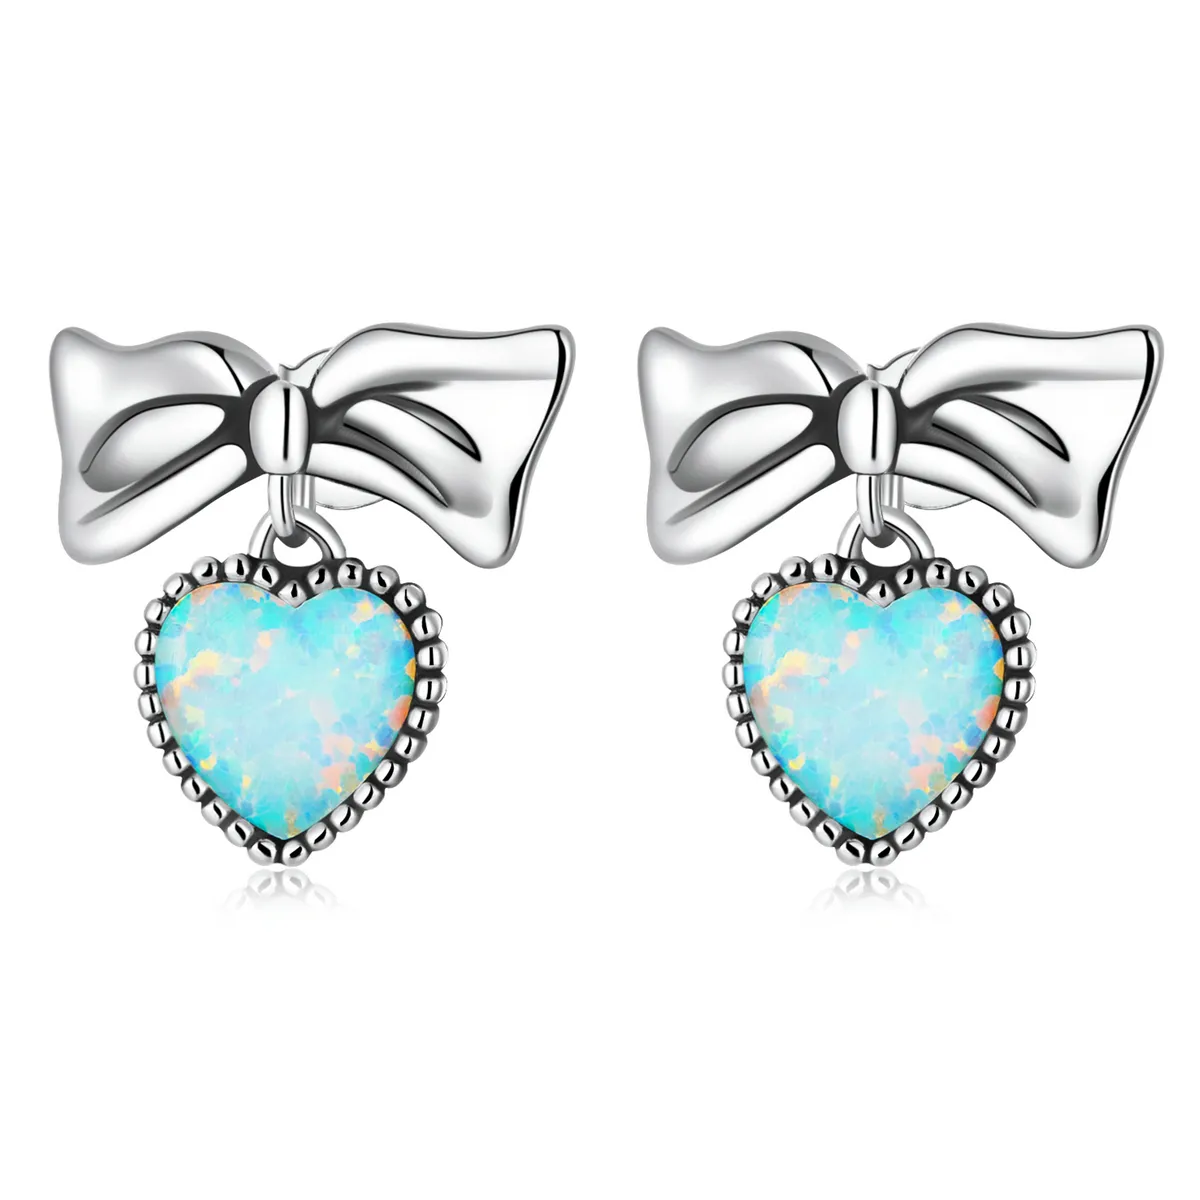 stud earrings sce1374 în stilul pandora cu inimă din opal și arc